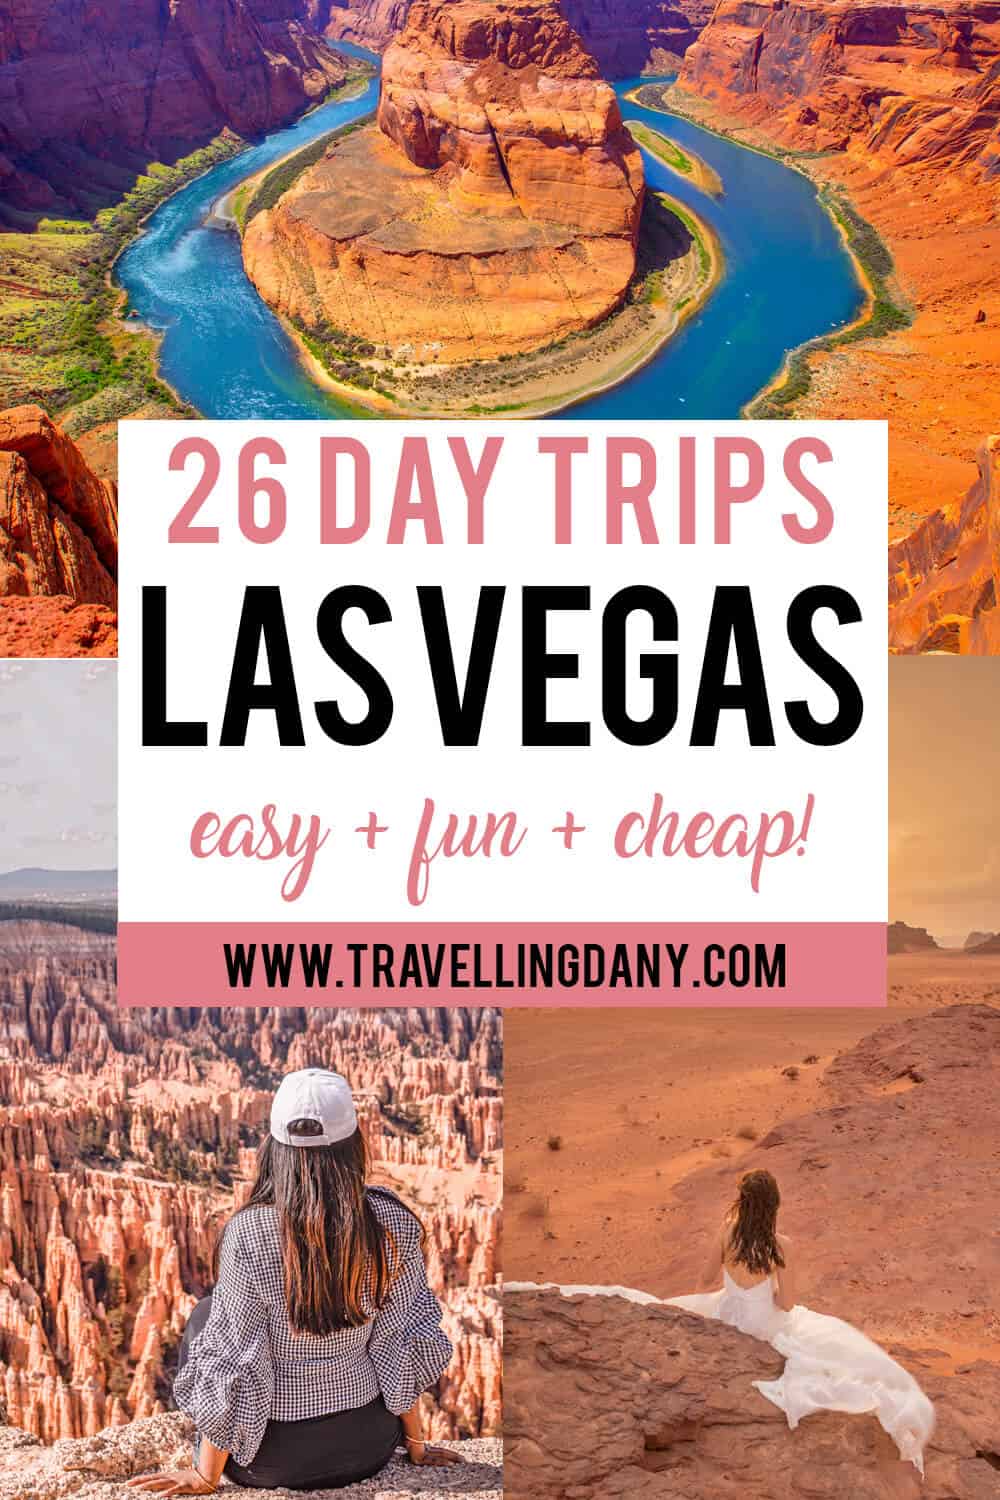 Scopri le migliori escursioni da Las Vegas in Nevada da organizzare autonomamente e in economia! Per un viaggio da sogno negli Stati Uniti!